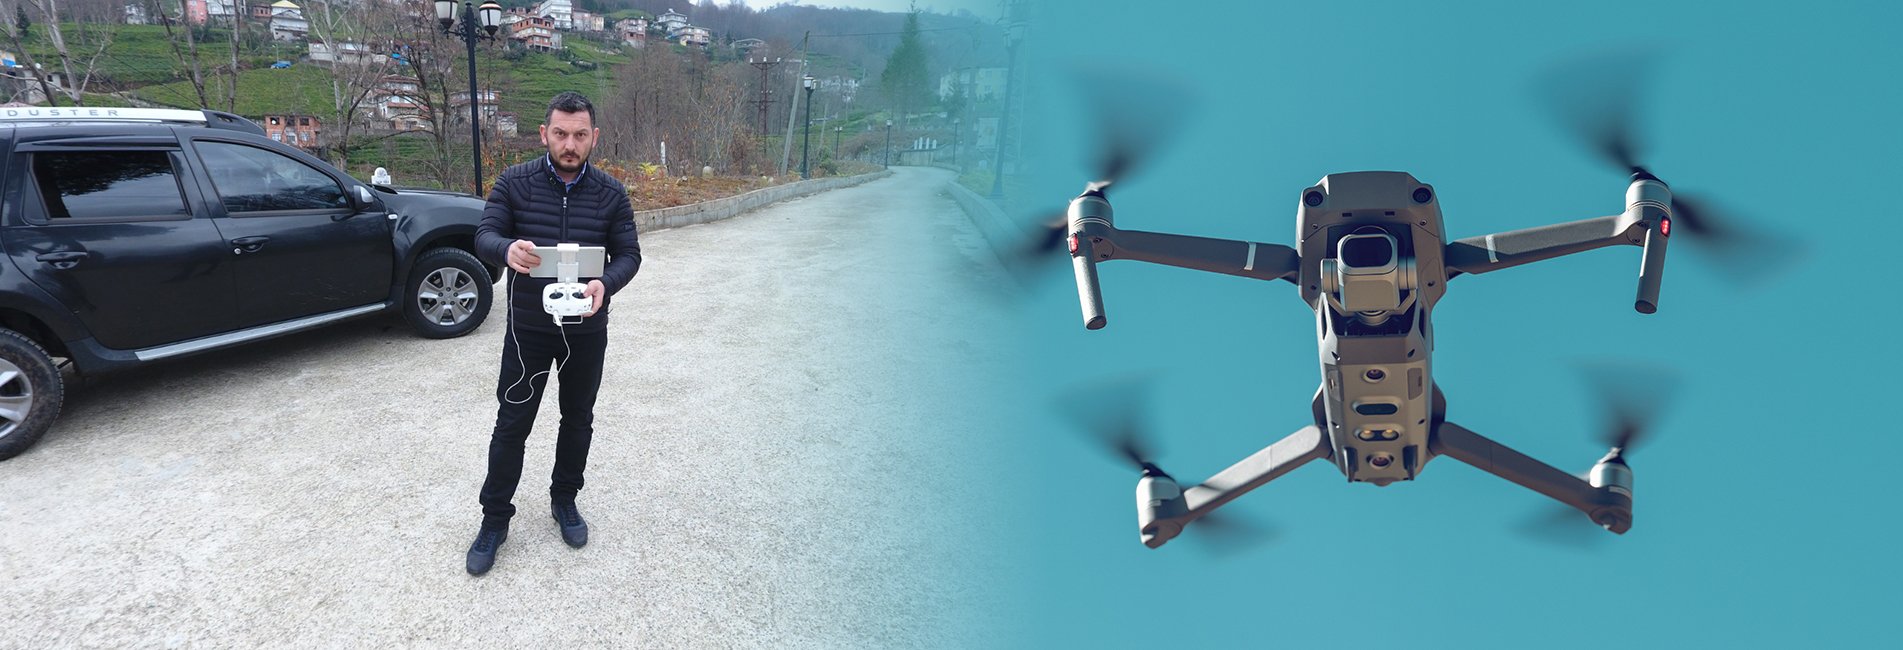 Rize’de Drone Kullananlar Dikkat!